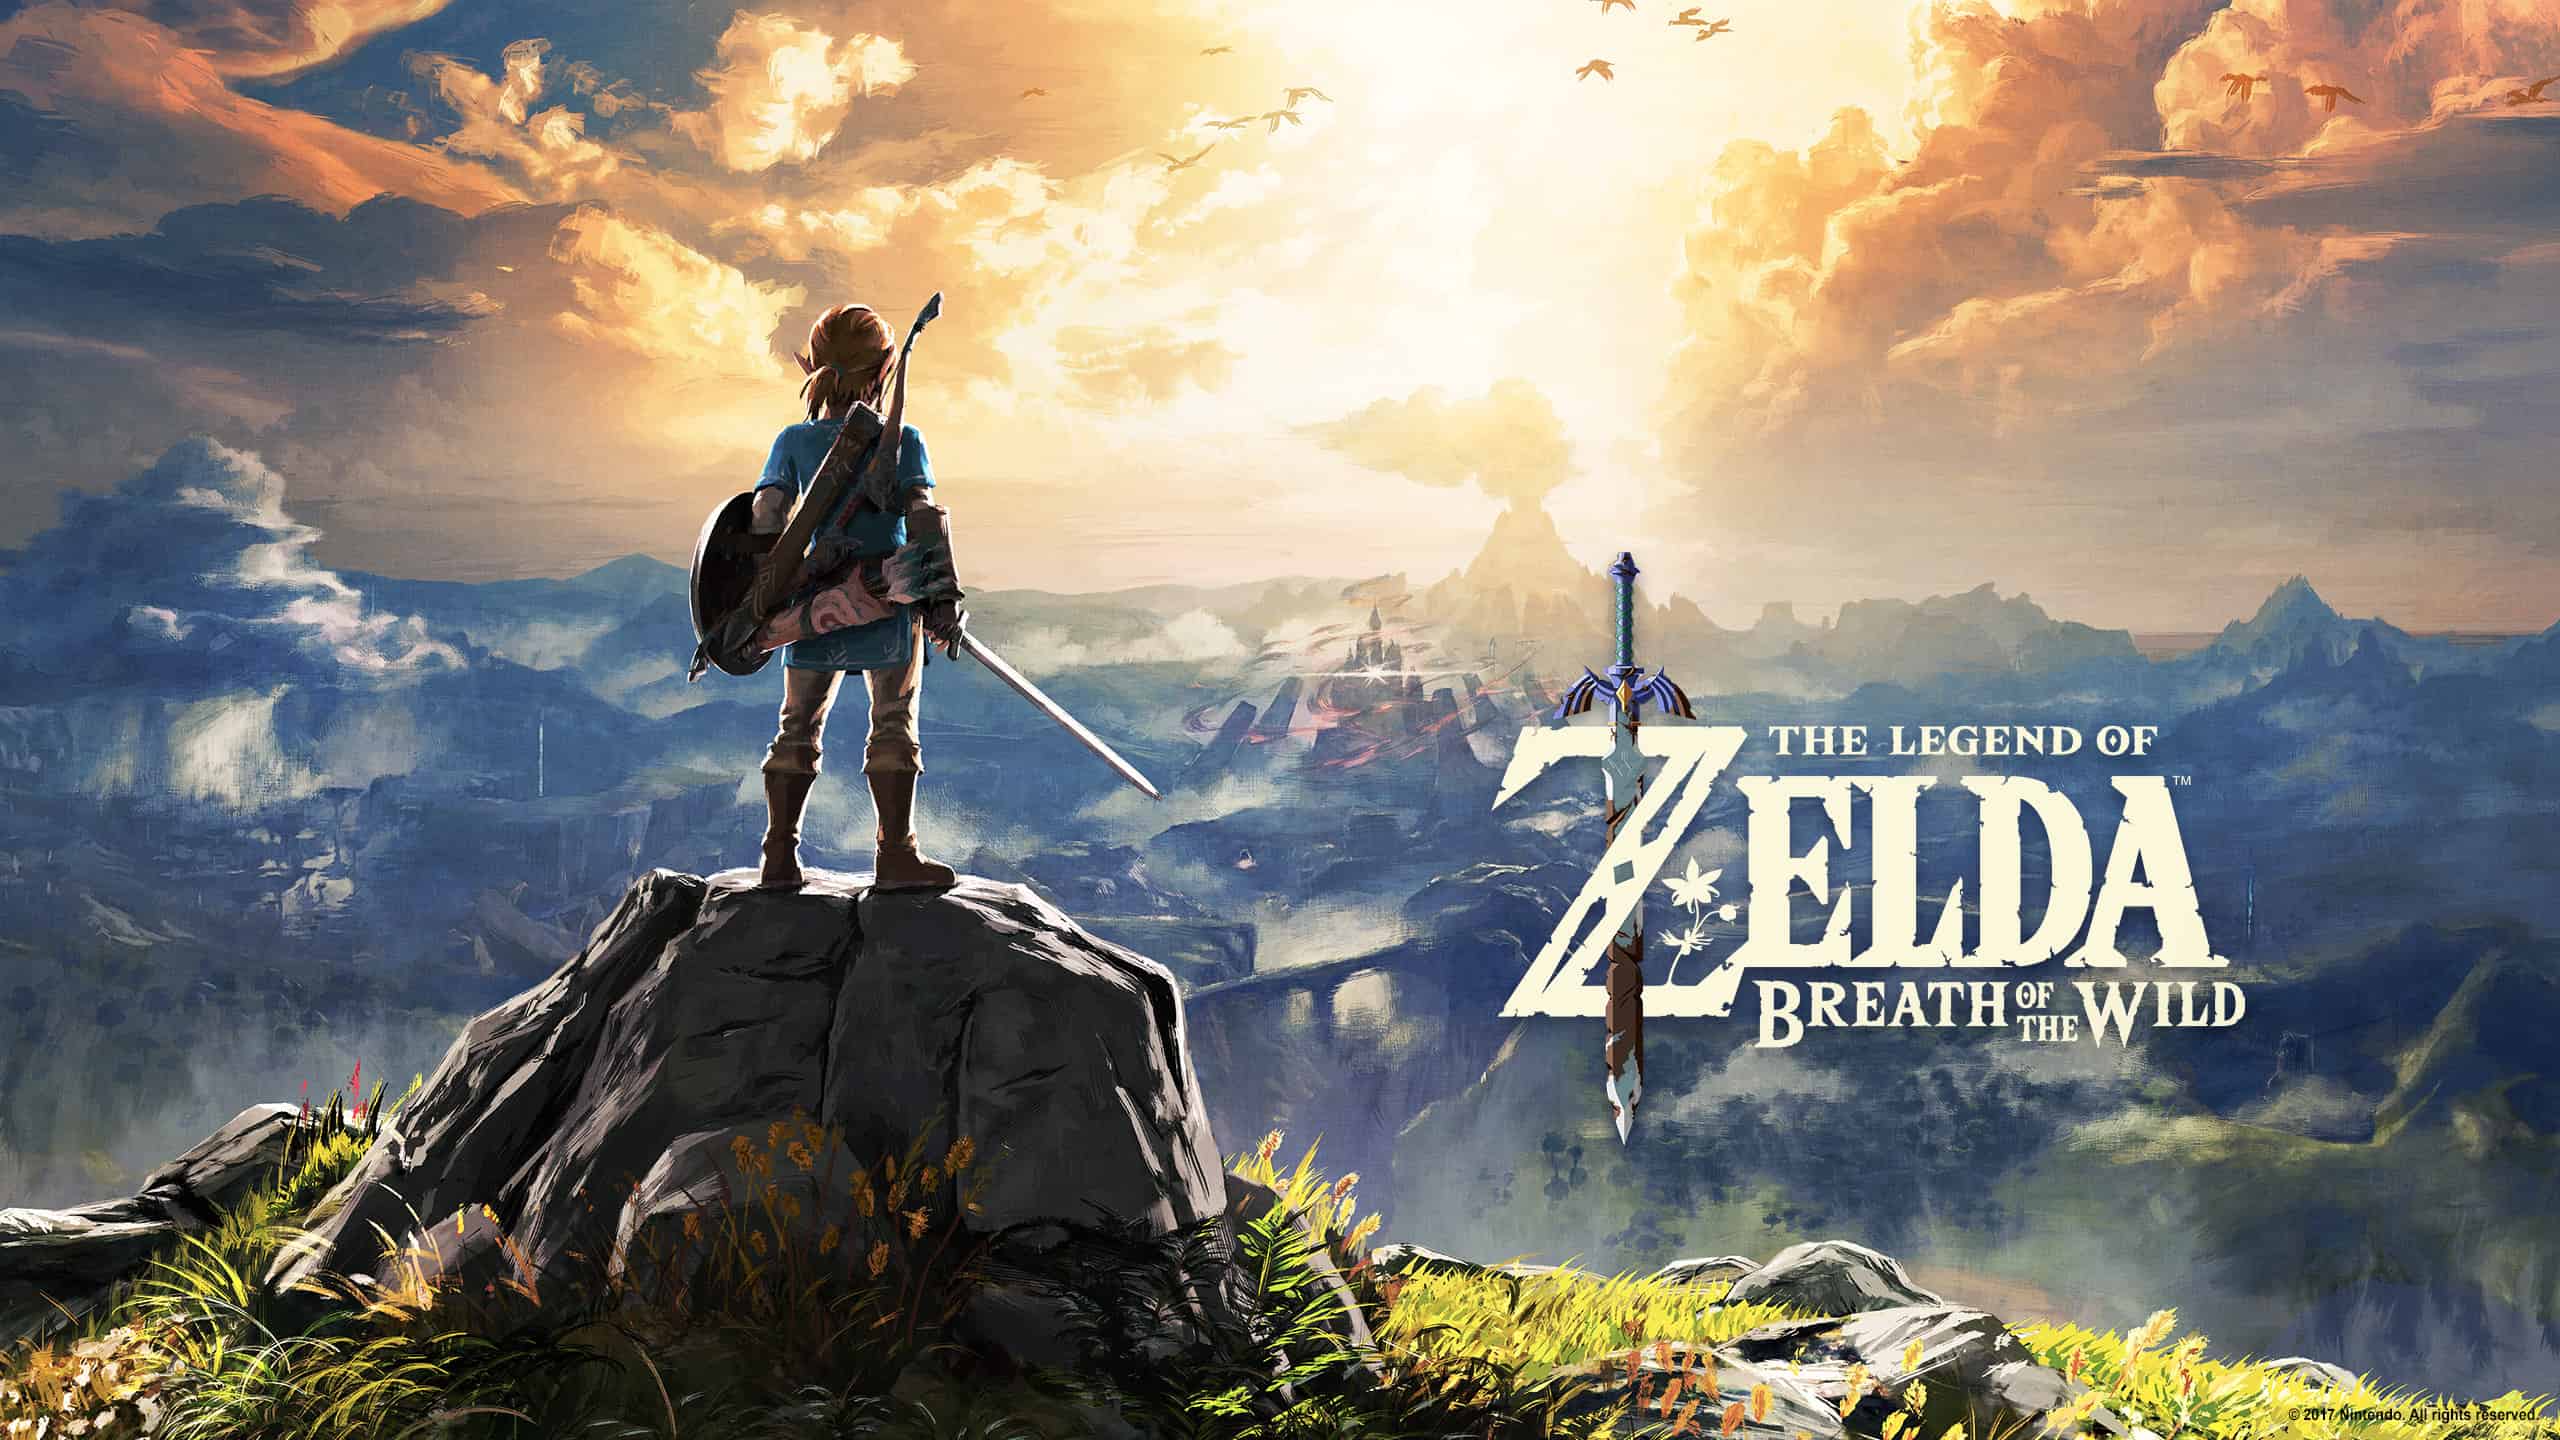 Best Zelda Games - The Legend of Zelda - Breath of the Wild